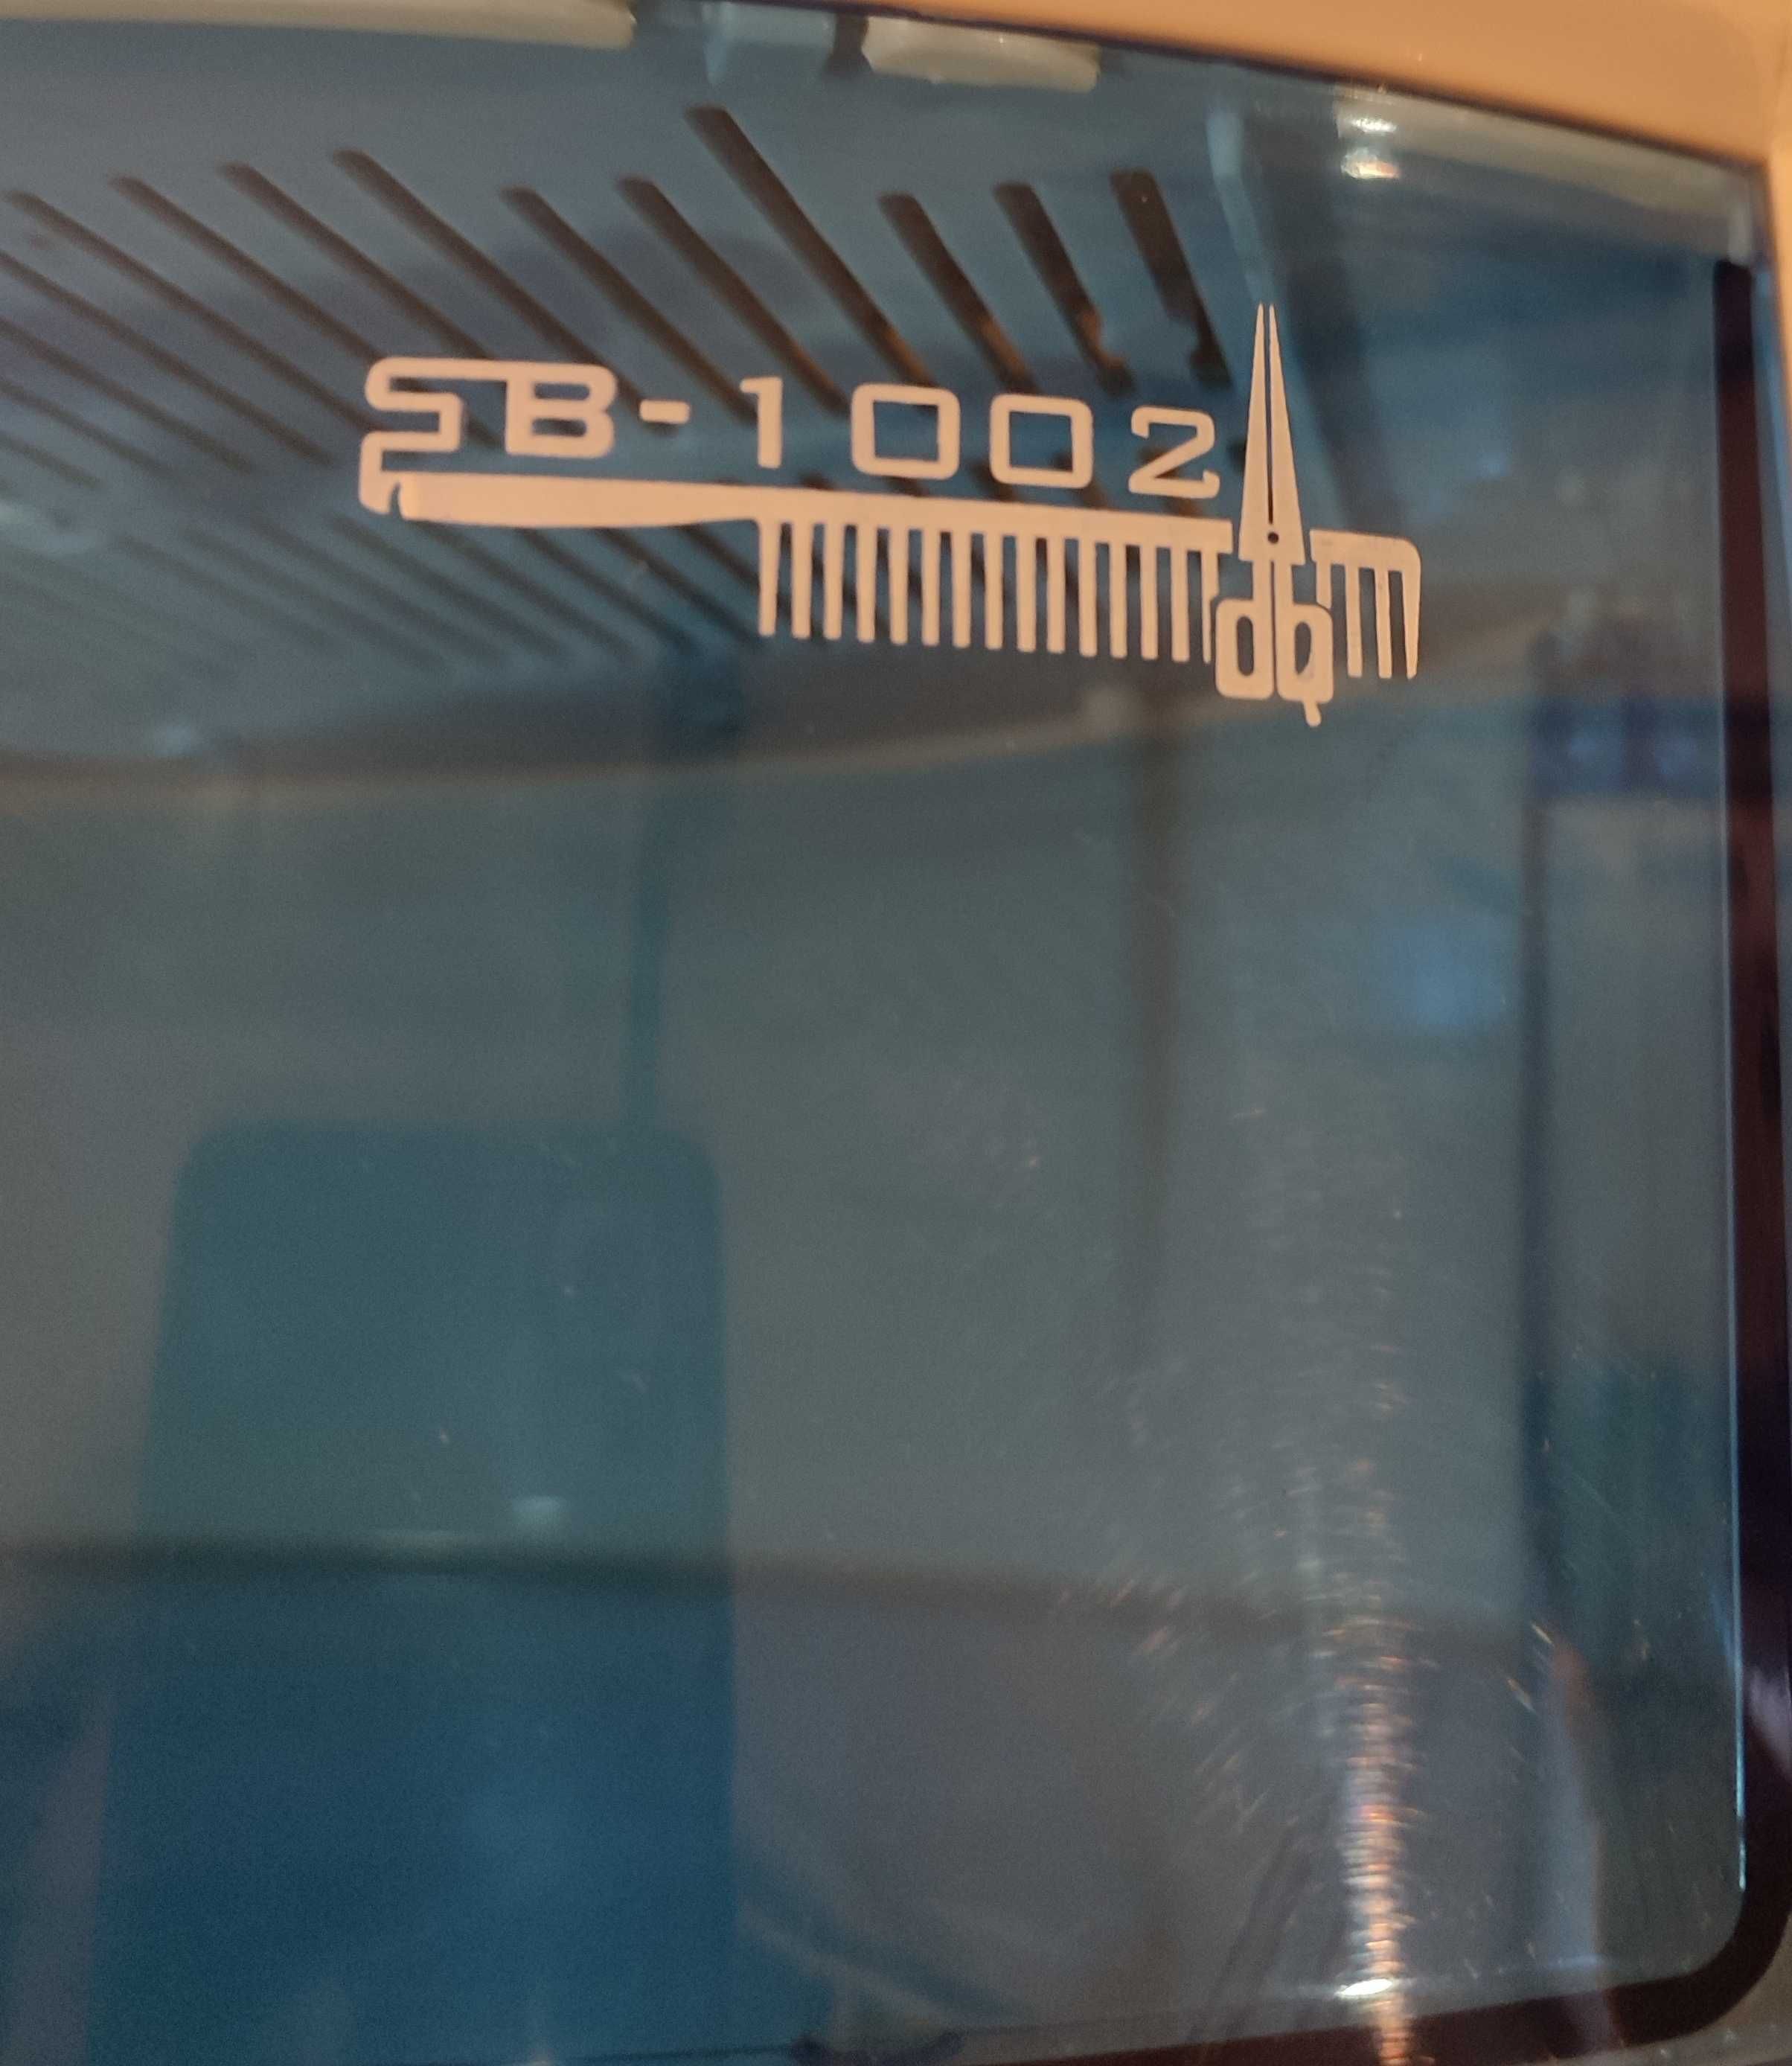 Стерилизатор ультрафиолетовый GERMIX  SB - 1002